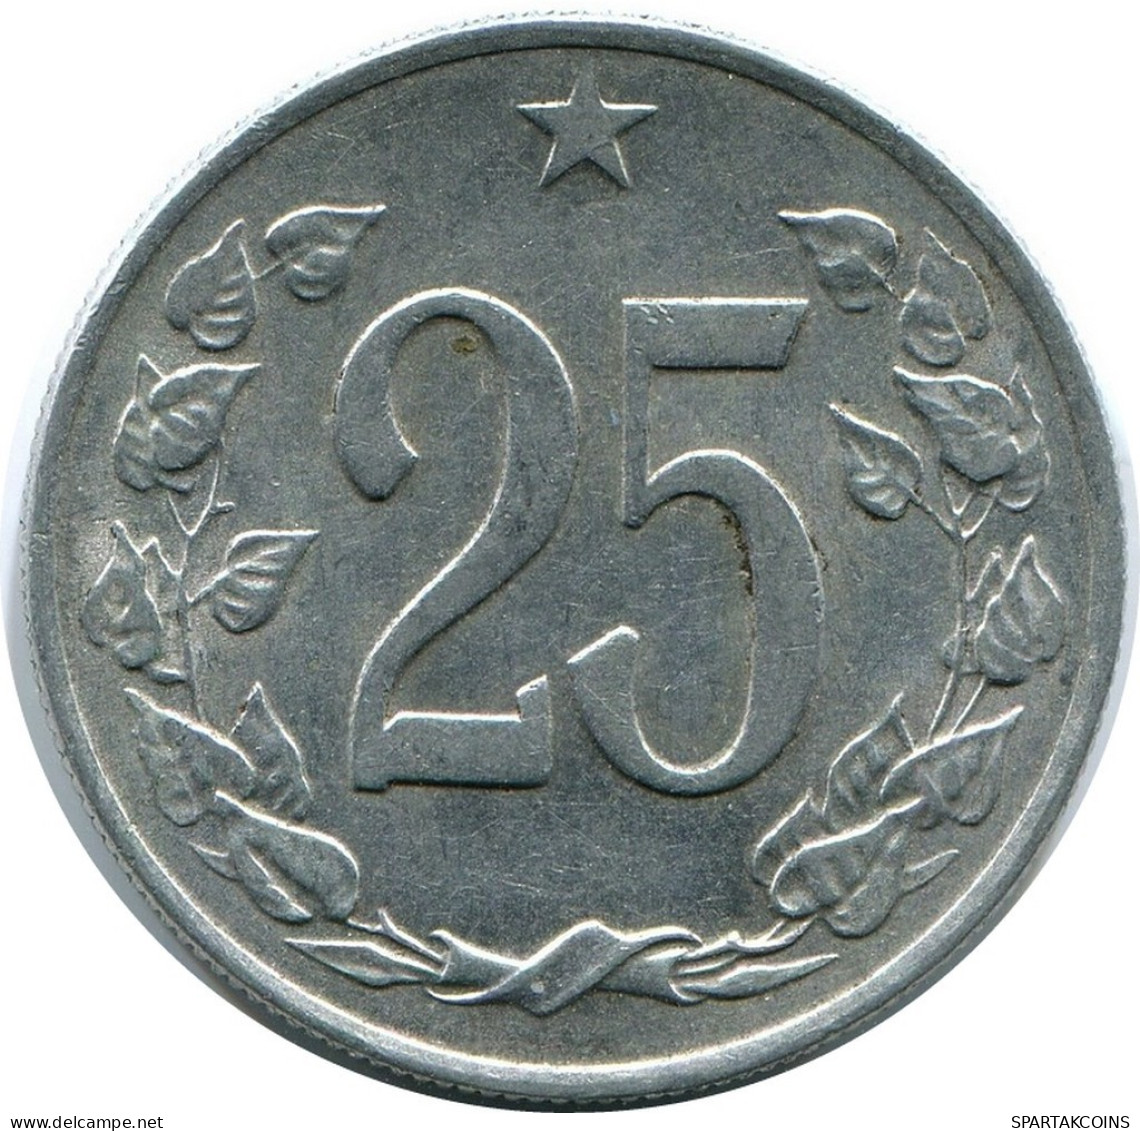 20 HALERU 1963 CHECOSLOVAQUIA CZECHOESLOVAQUIA SLOVAKIA Moneda #AR225.E.A - Tsjechoslowakije